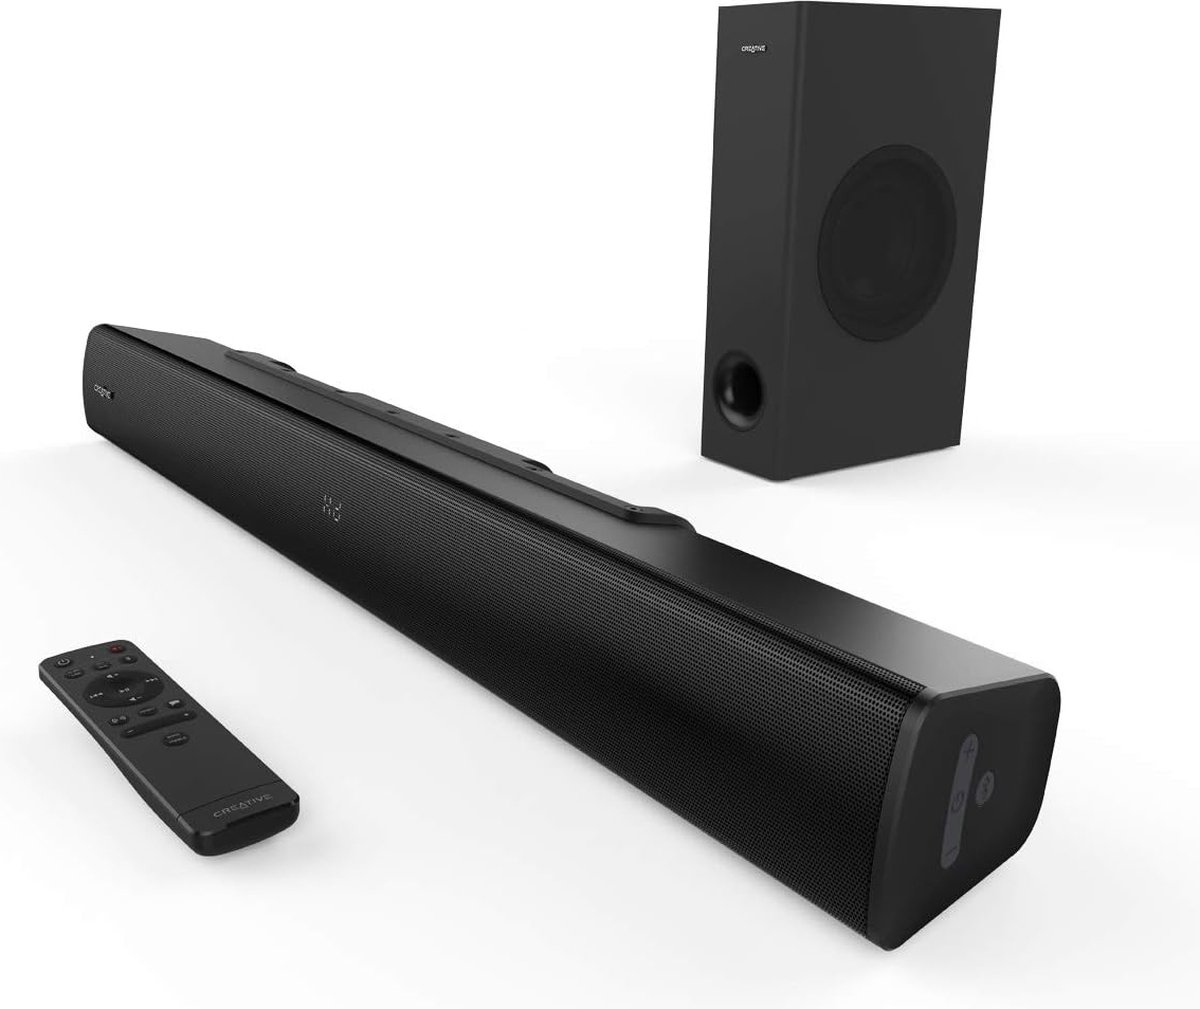 Creative Stage V2 - Soundbar voor TV en desktopmonitor - met subwoofer (zwart) - Creative